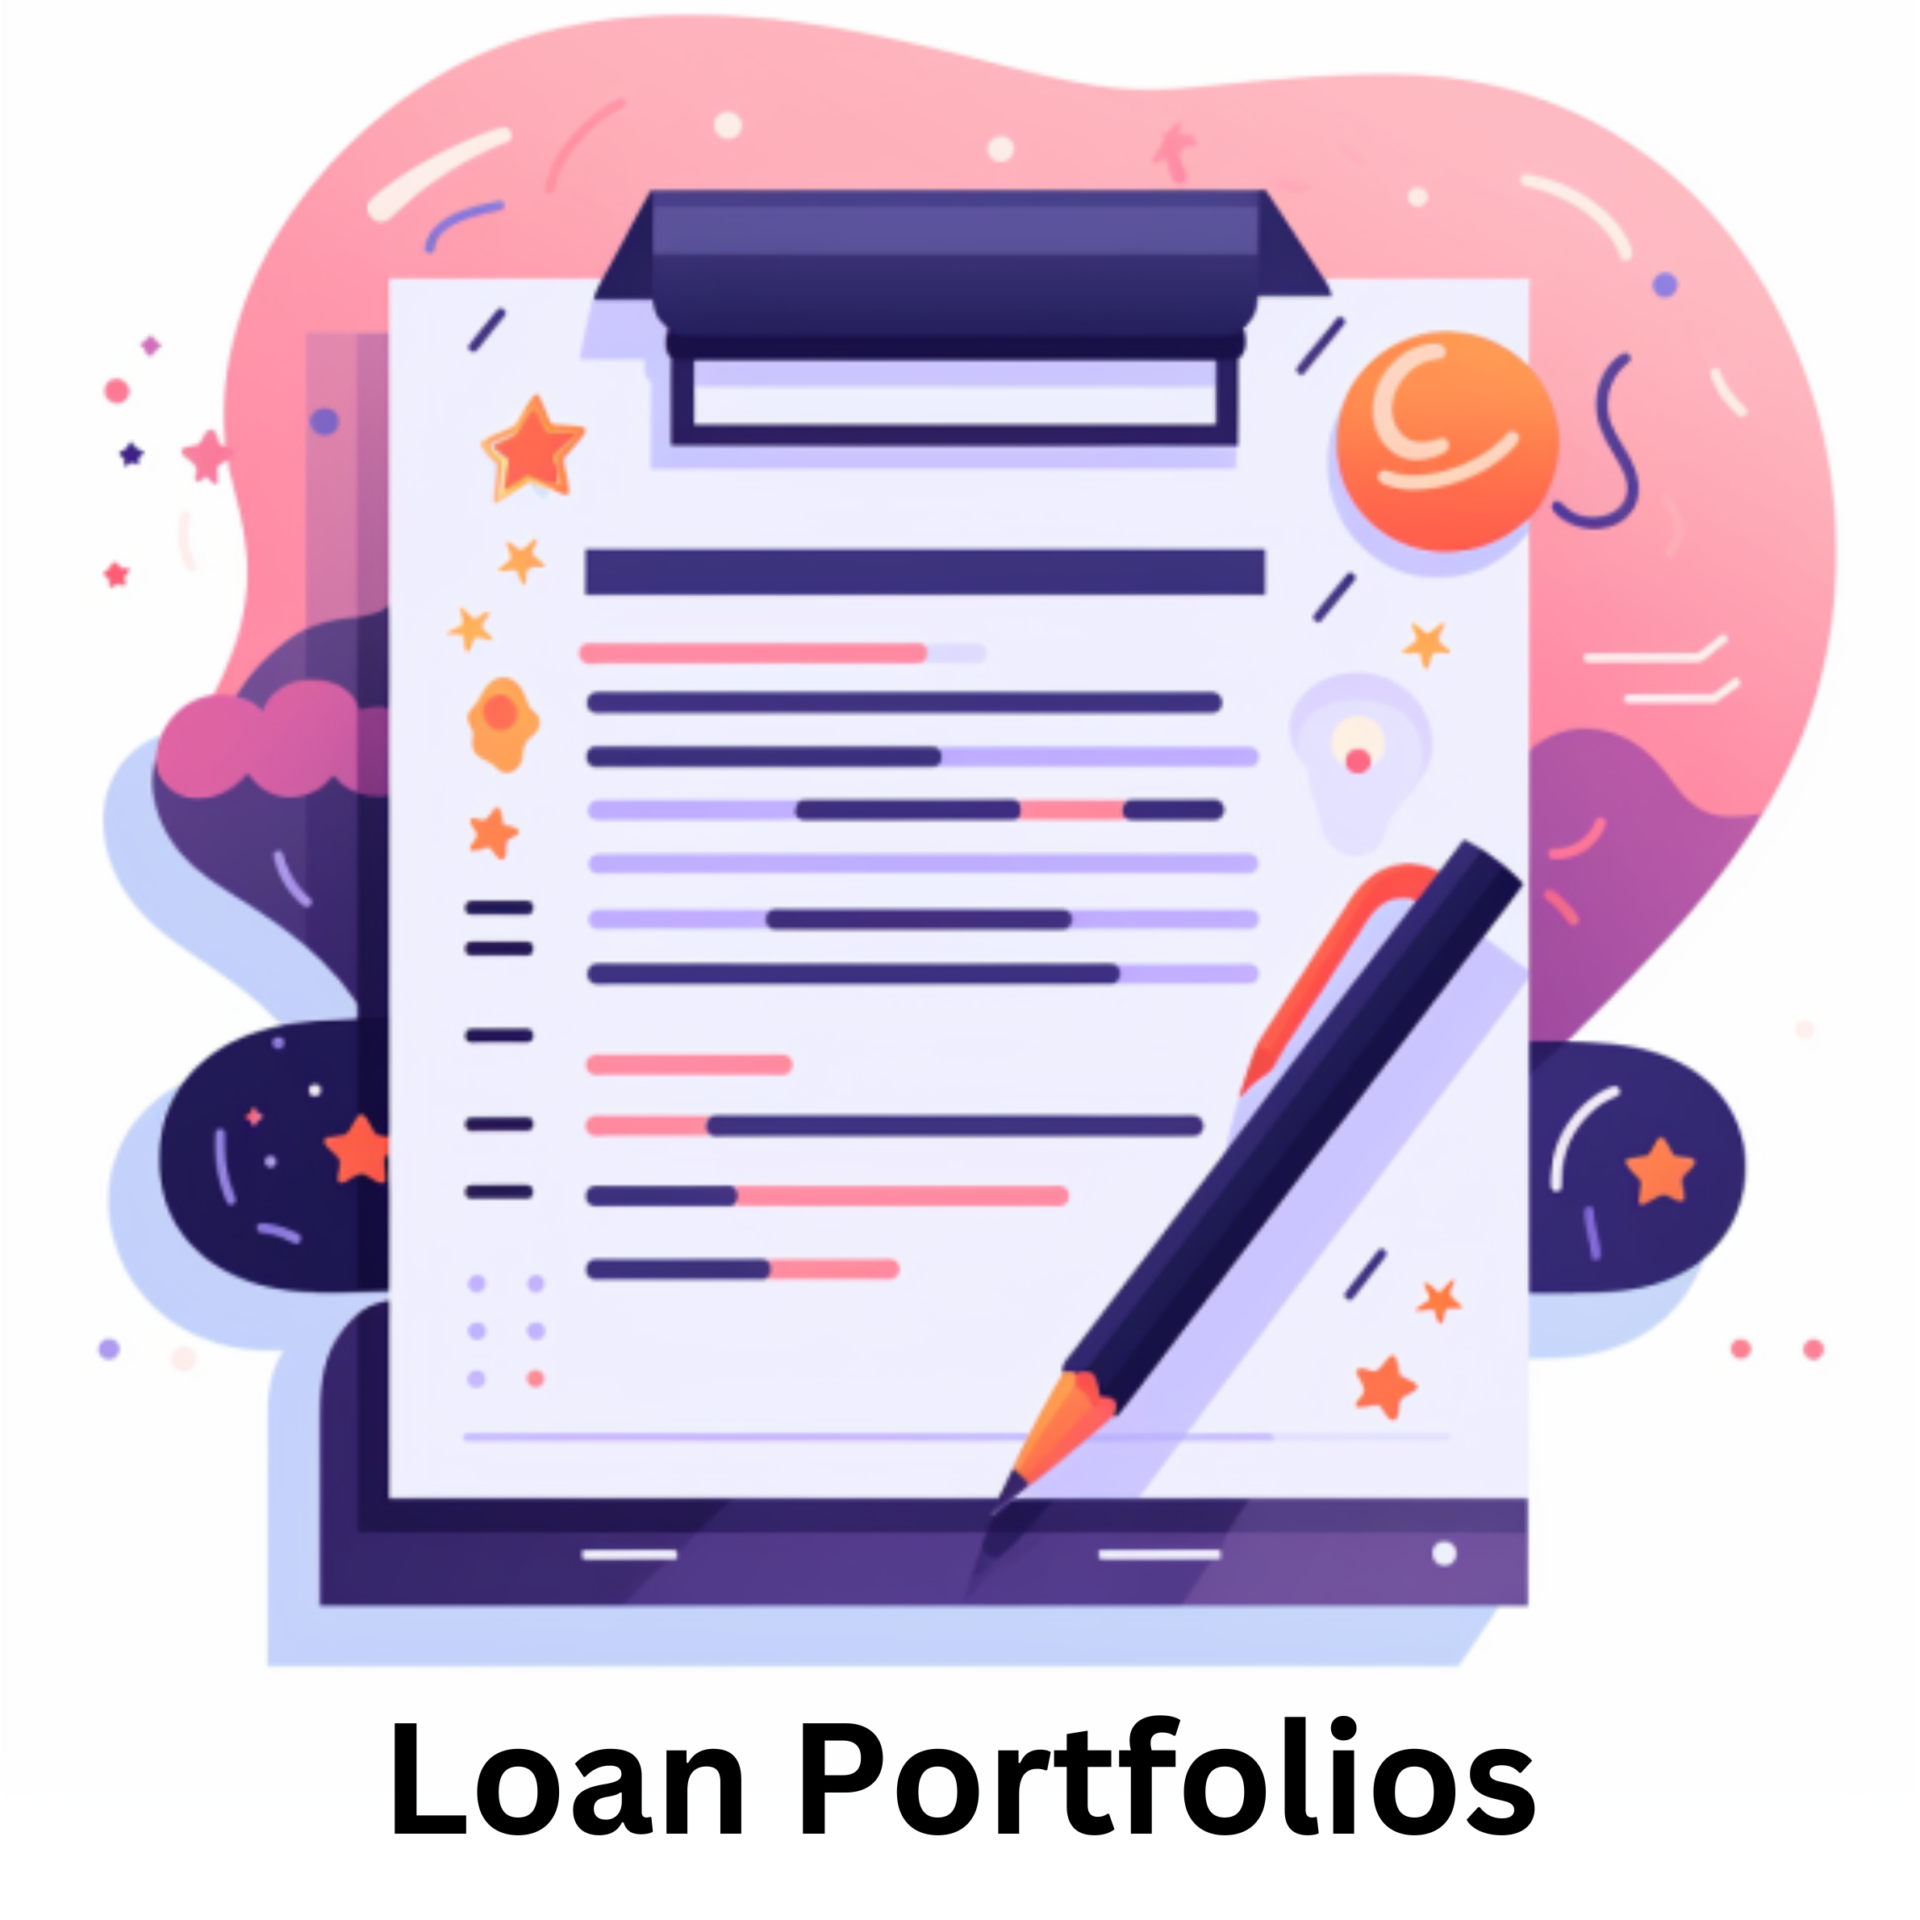 Loan Portfolios